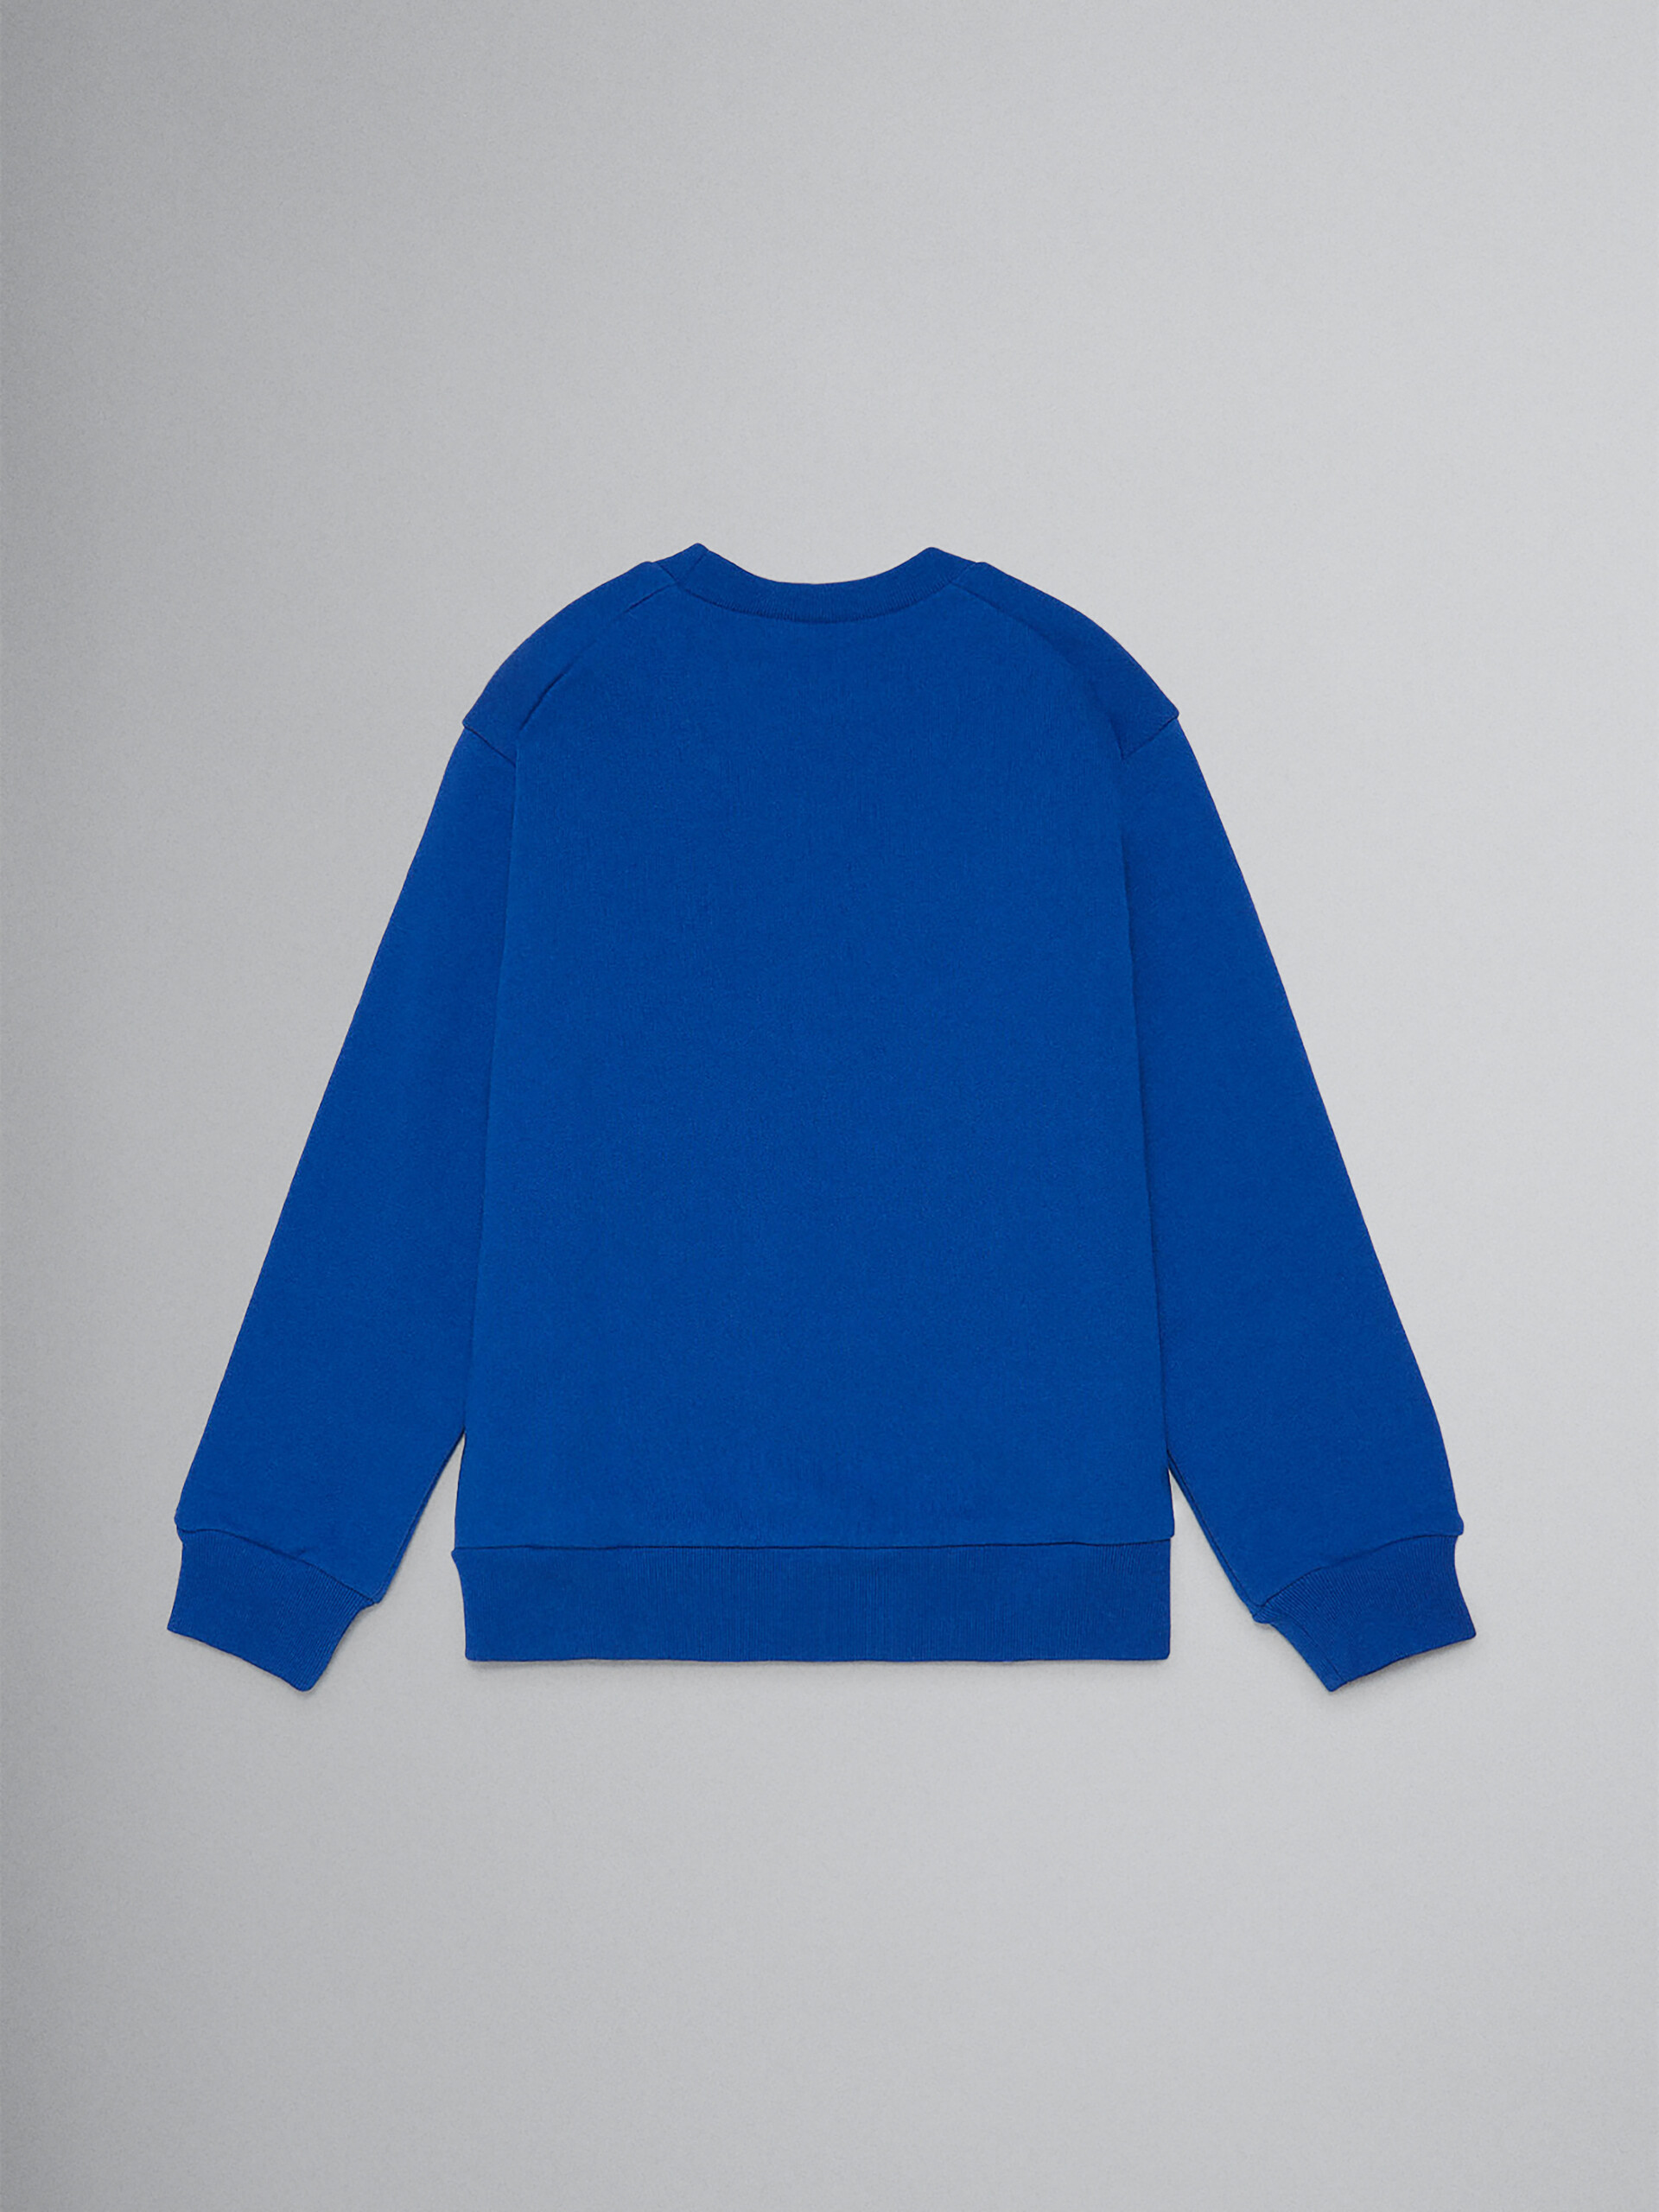 ブルー コットン製クルーネックスウェットシャツ ロゴ入り - ニット - Image 2